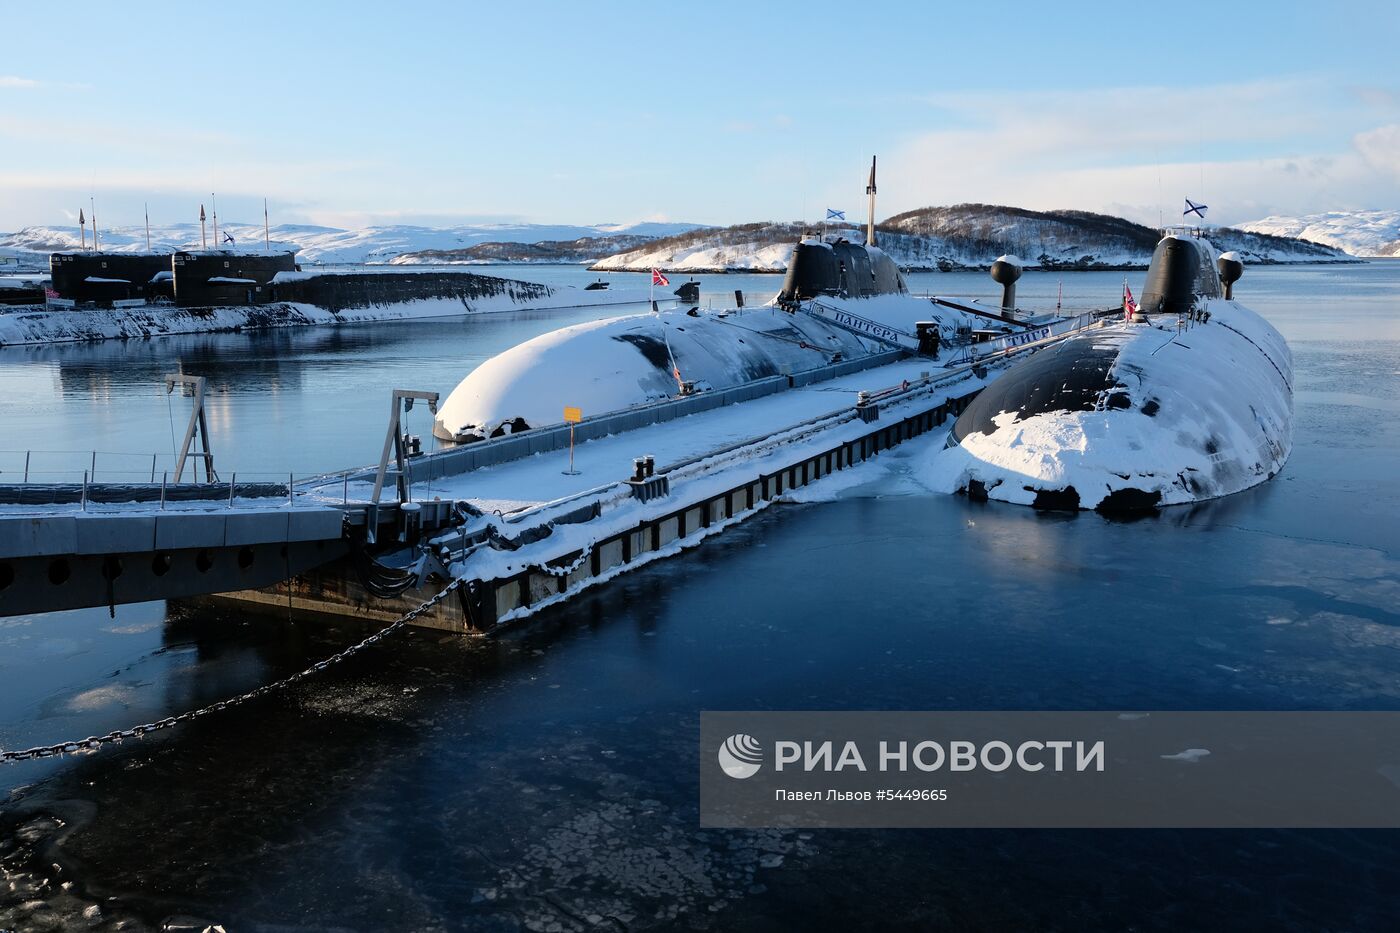 Подводные лодки Северного флота  на базе  в Гаджиево  Мурманской области